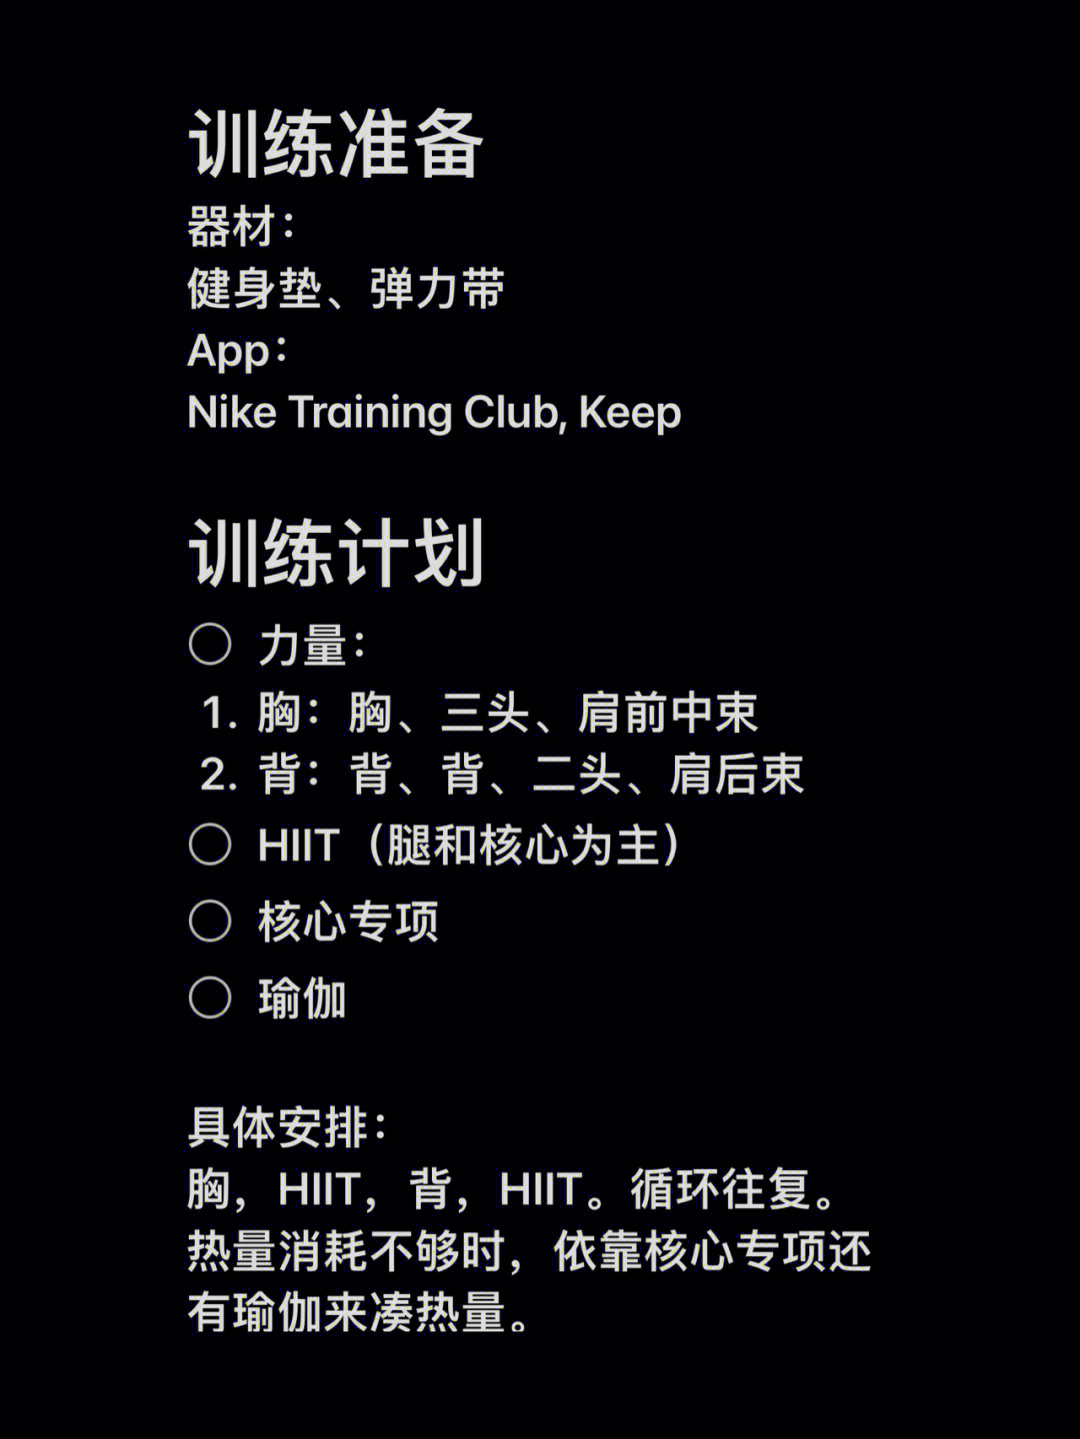 训练准备器材:健身垫,弹力带app:nike training club, keep训练计划